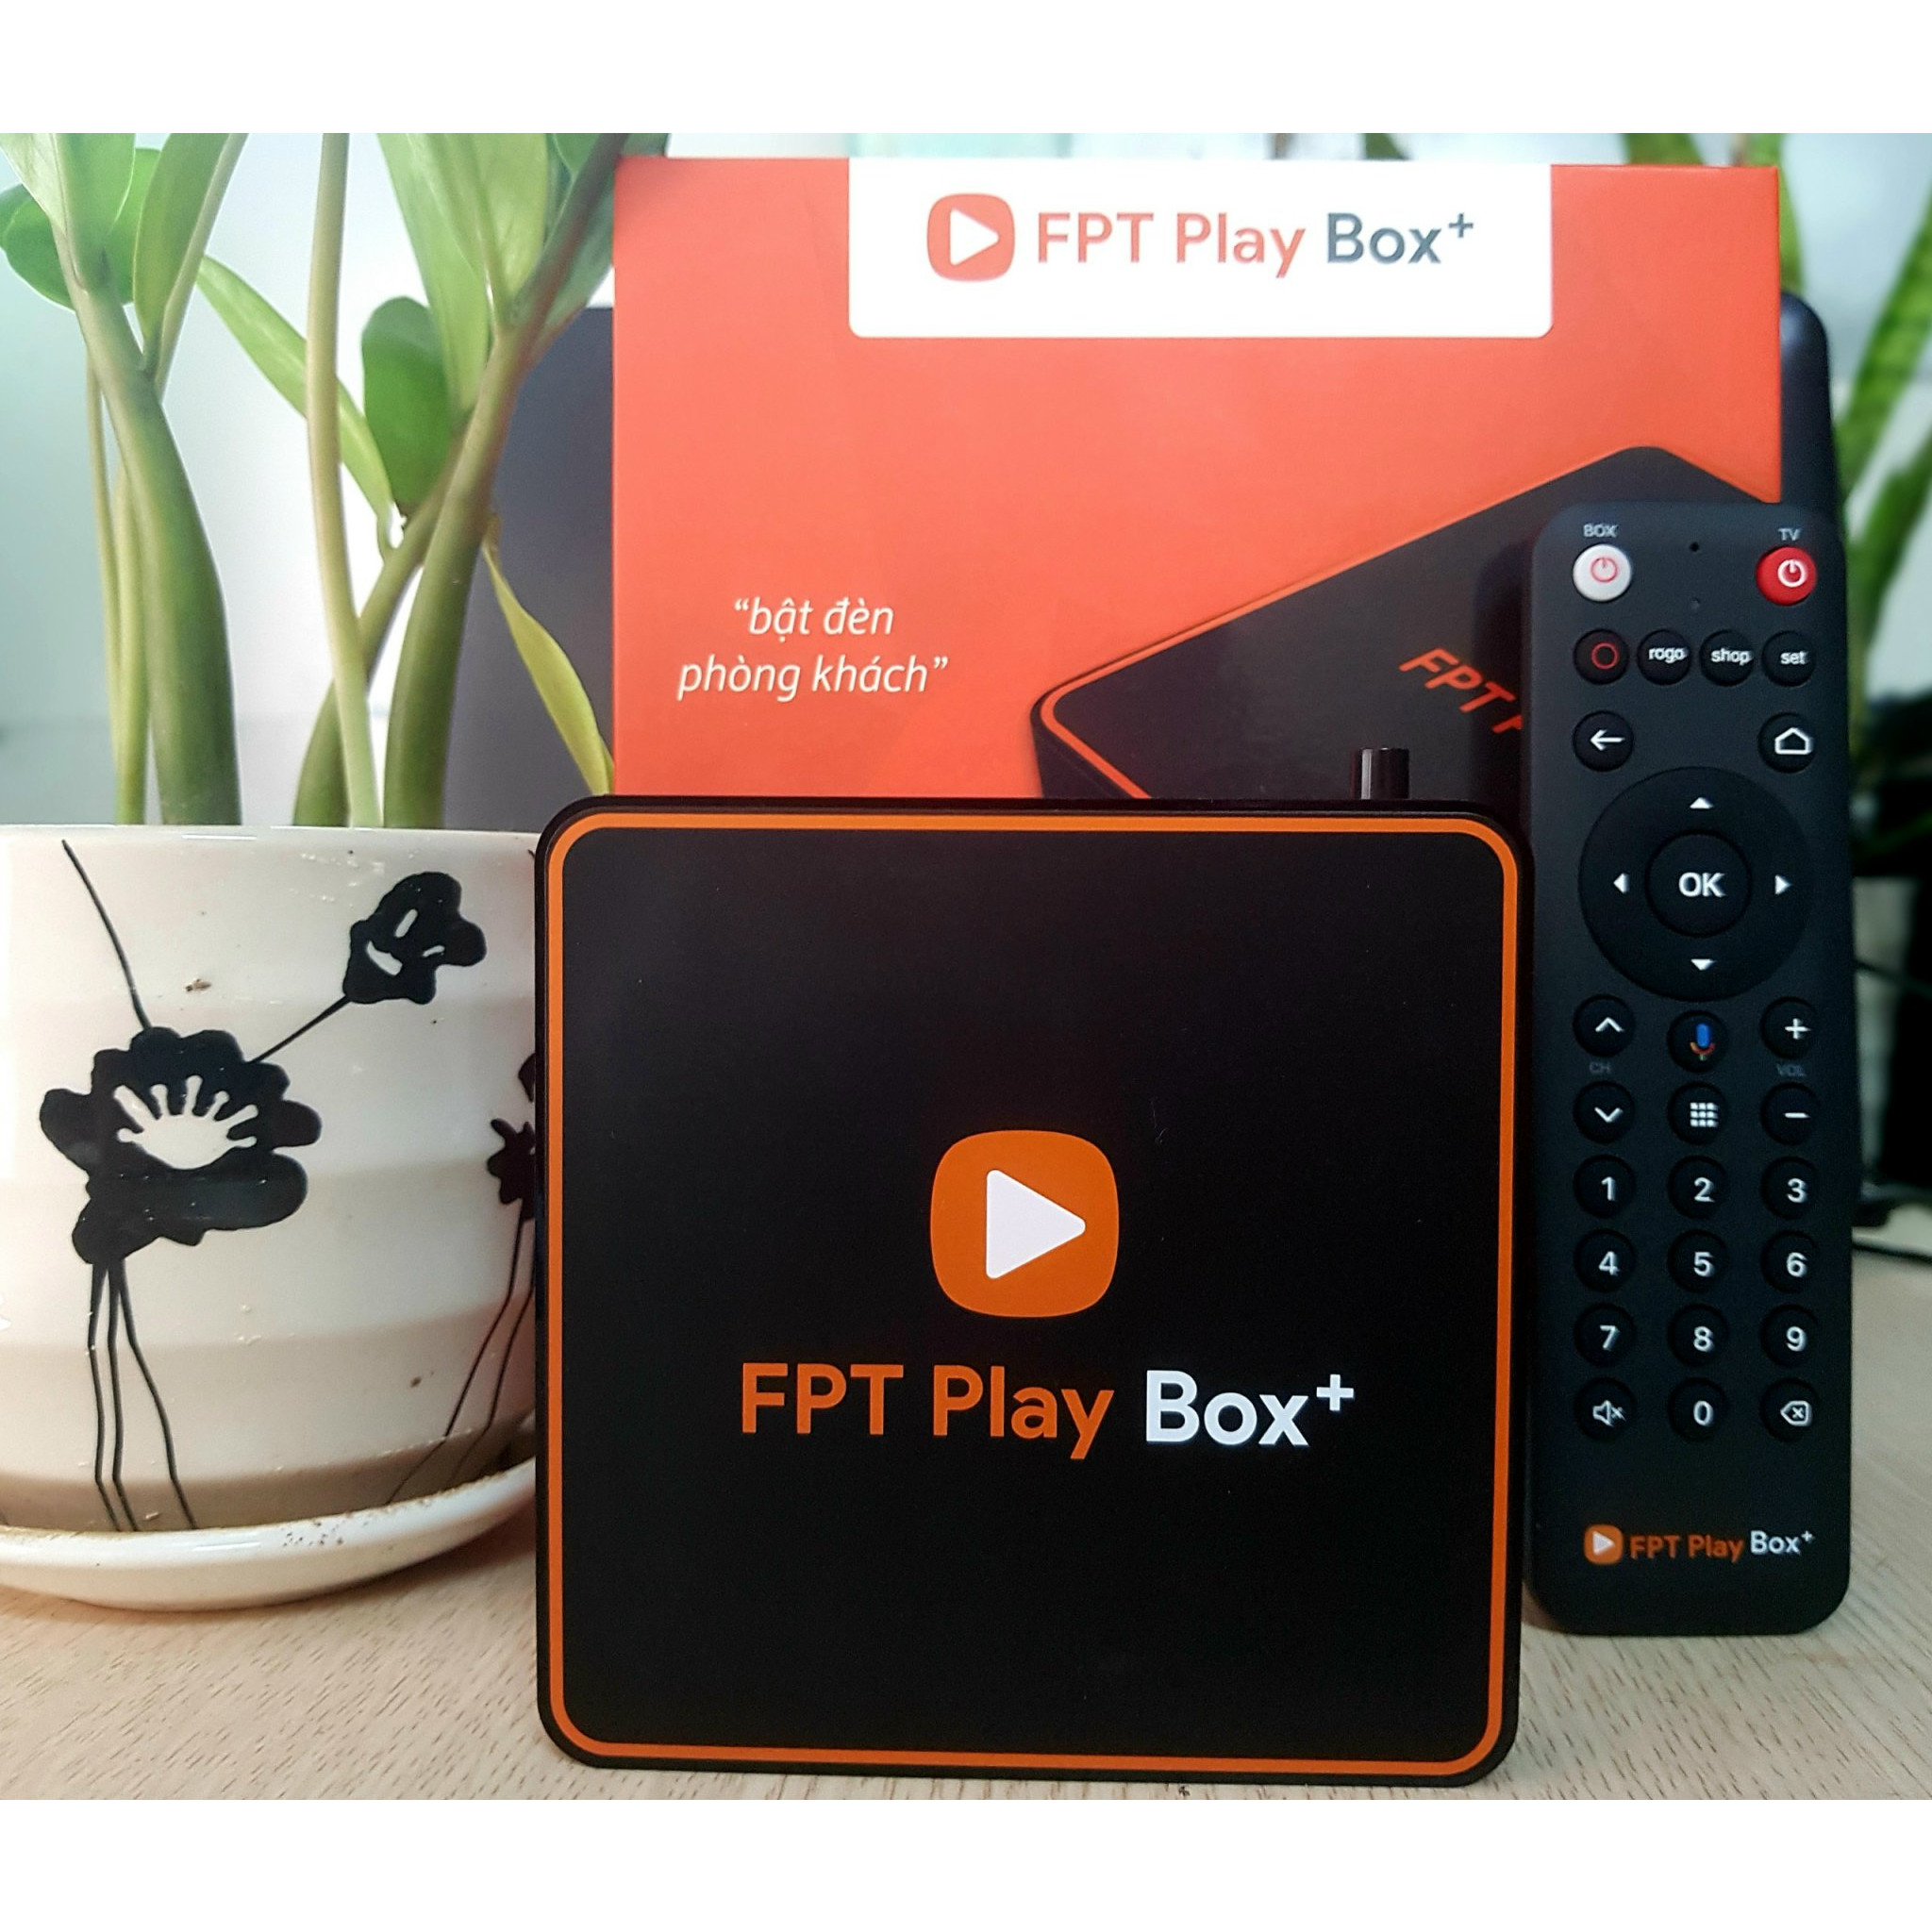 FPT Play Box 2020 S500 Android 10 Ram 2G, ROM 16G - SẢN PHẨM CHÍNH HÃNG